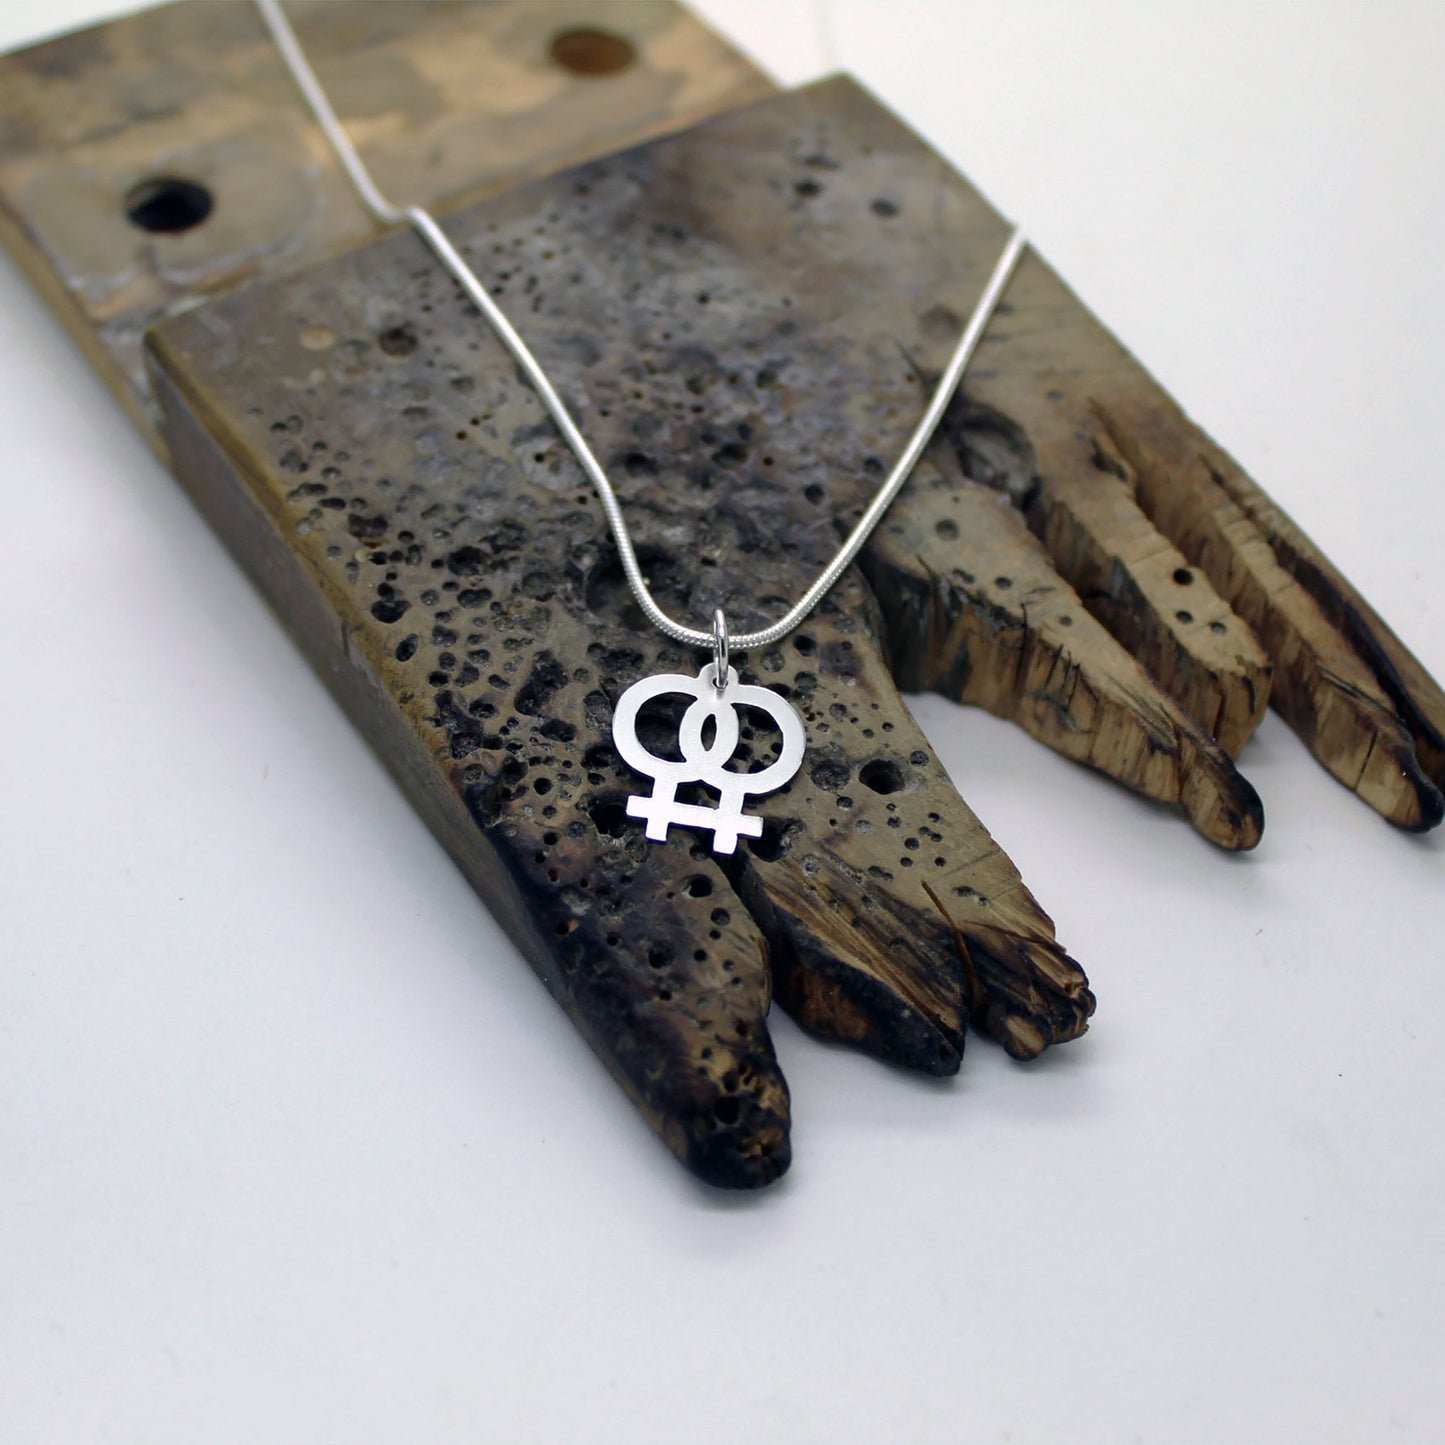 925 silver female symbols pendant